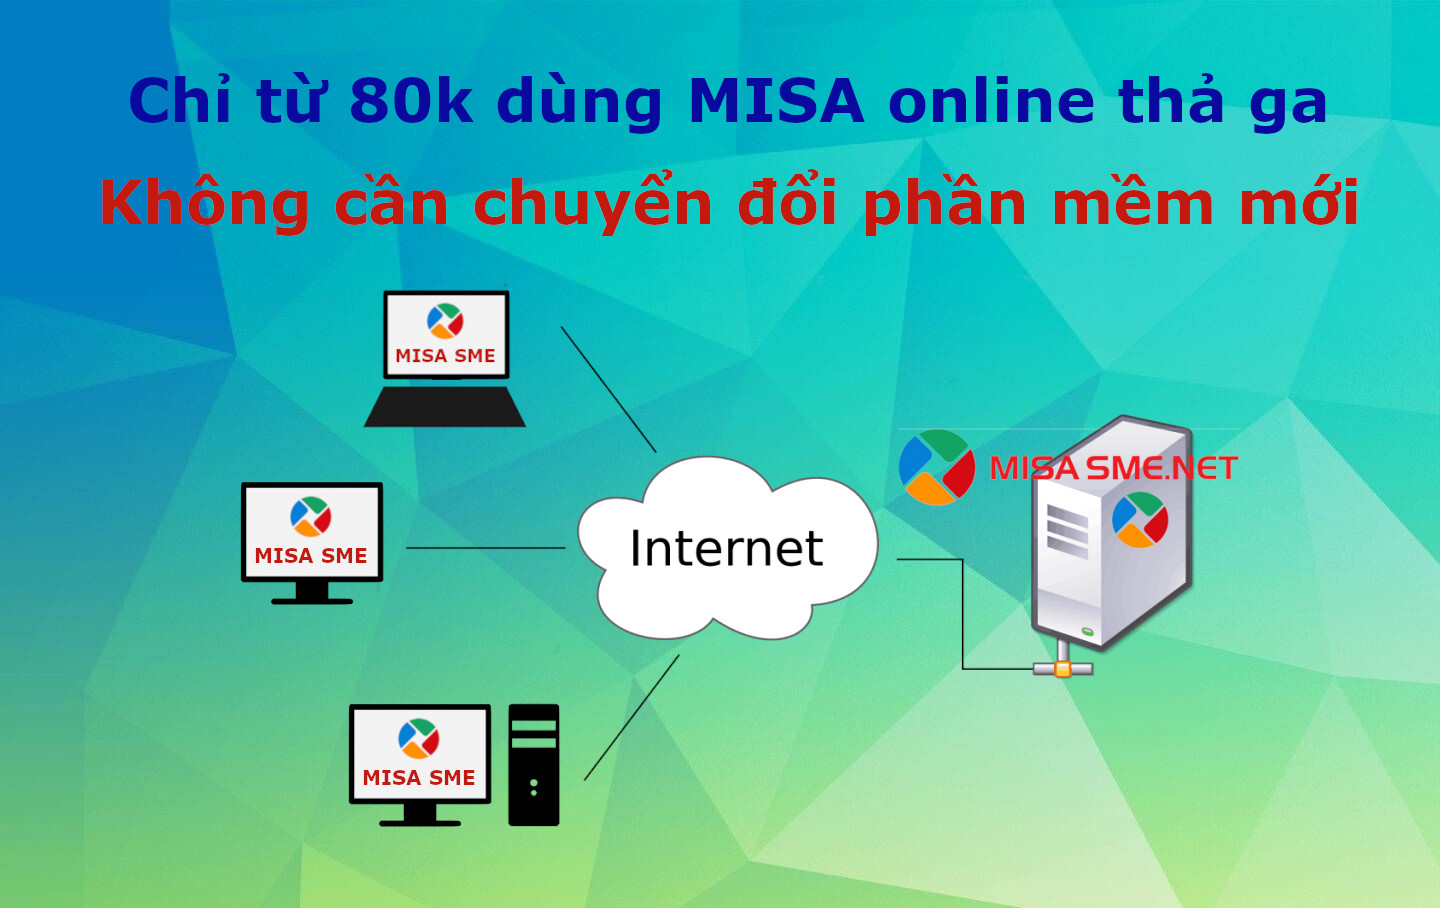 Chỉ từ 80k/tháng để dùng online phần mềm MISA bản offline